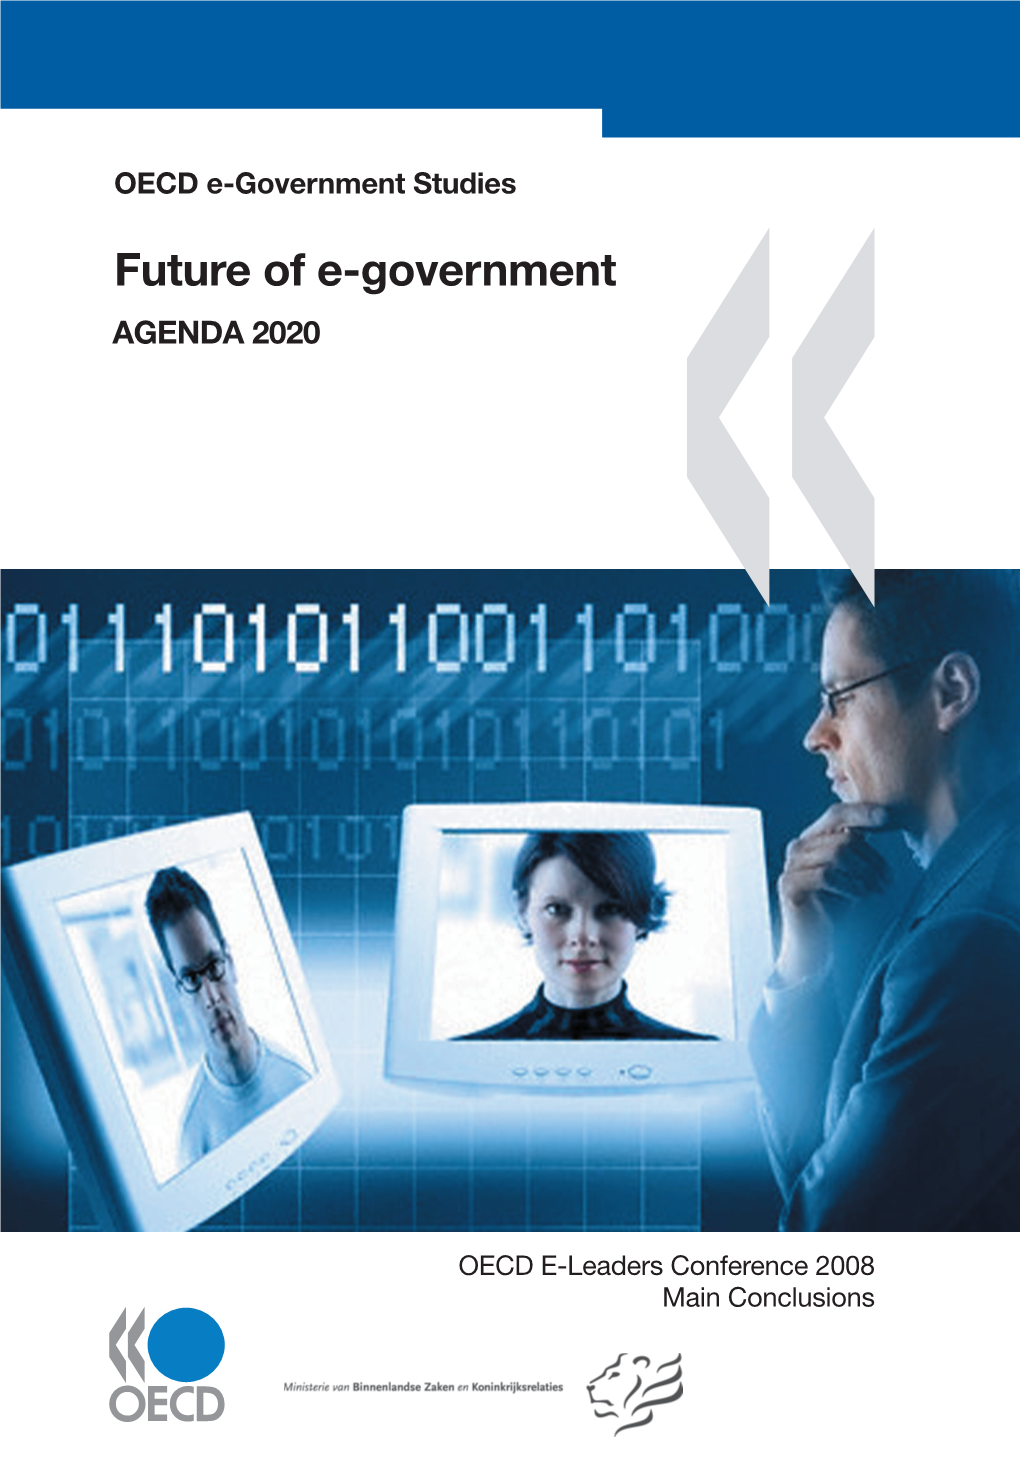 Future of E-Government, Agenda 2020